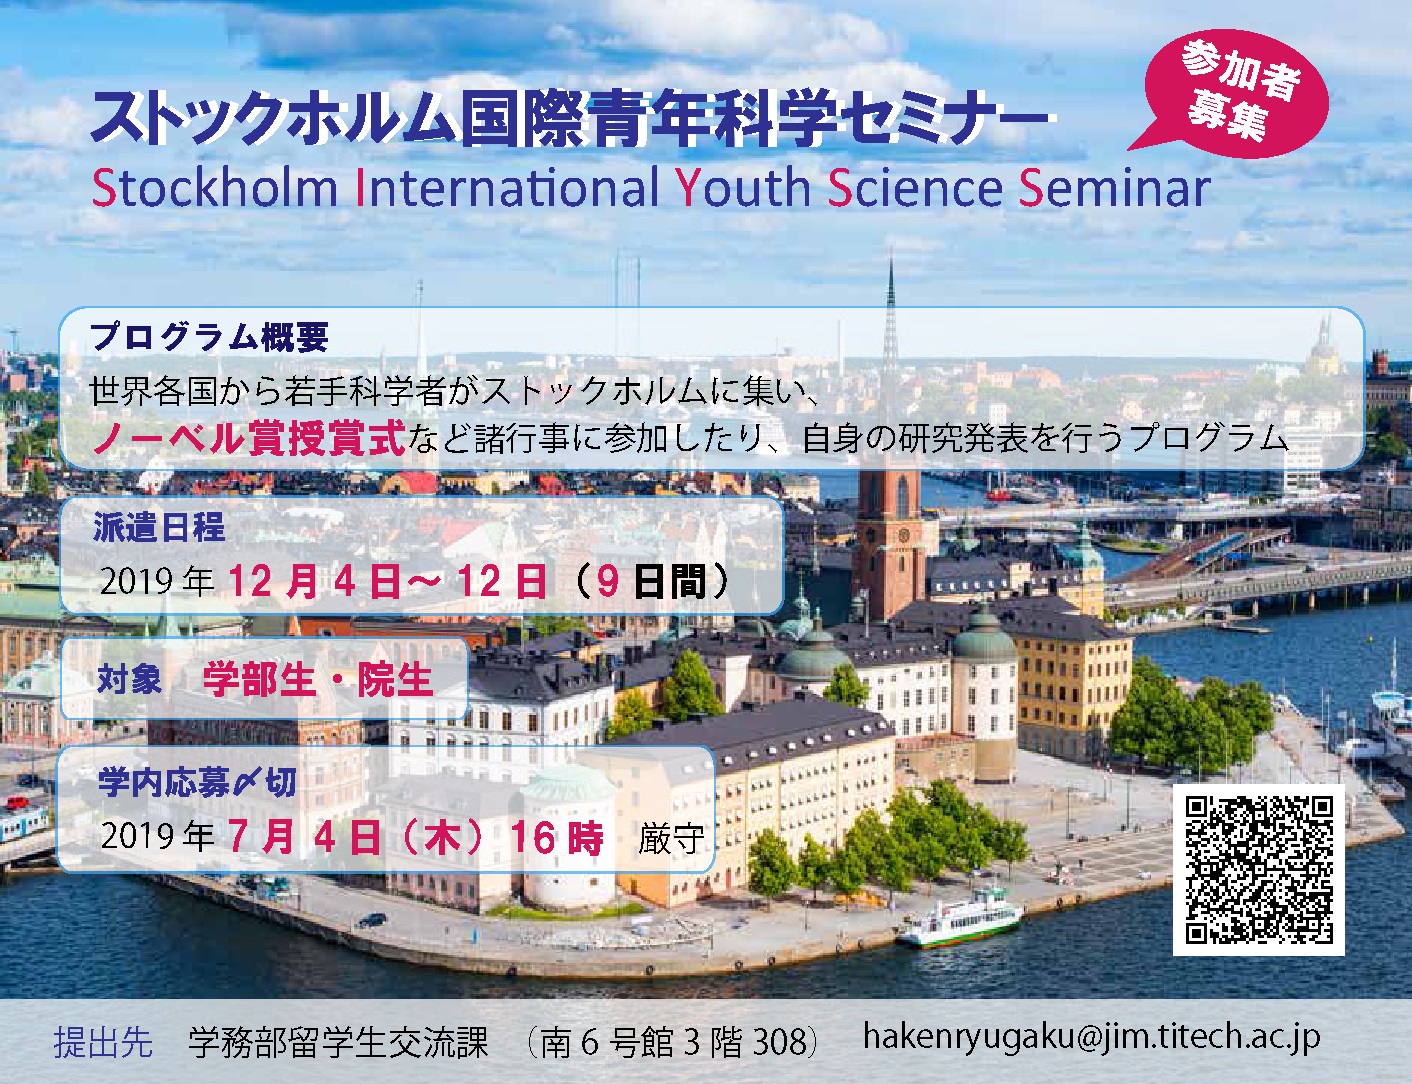 ストックホルム国際青年科学セミナー(SIYSS)